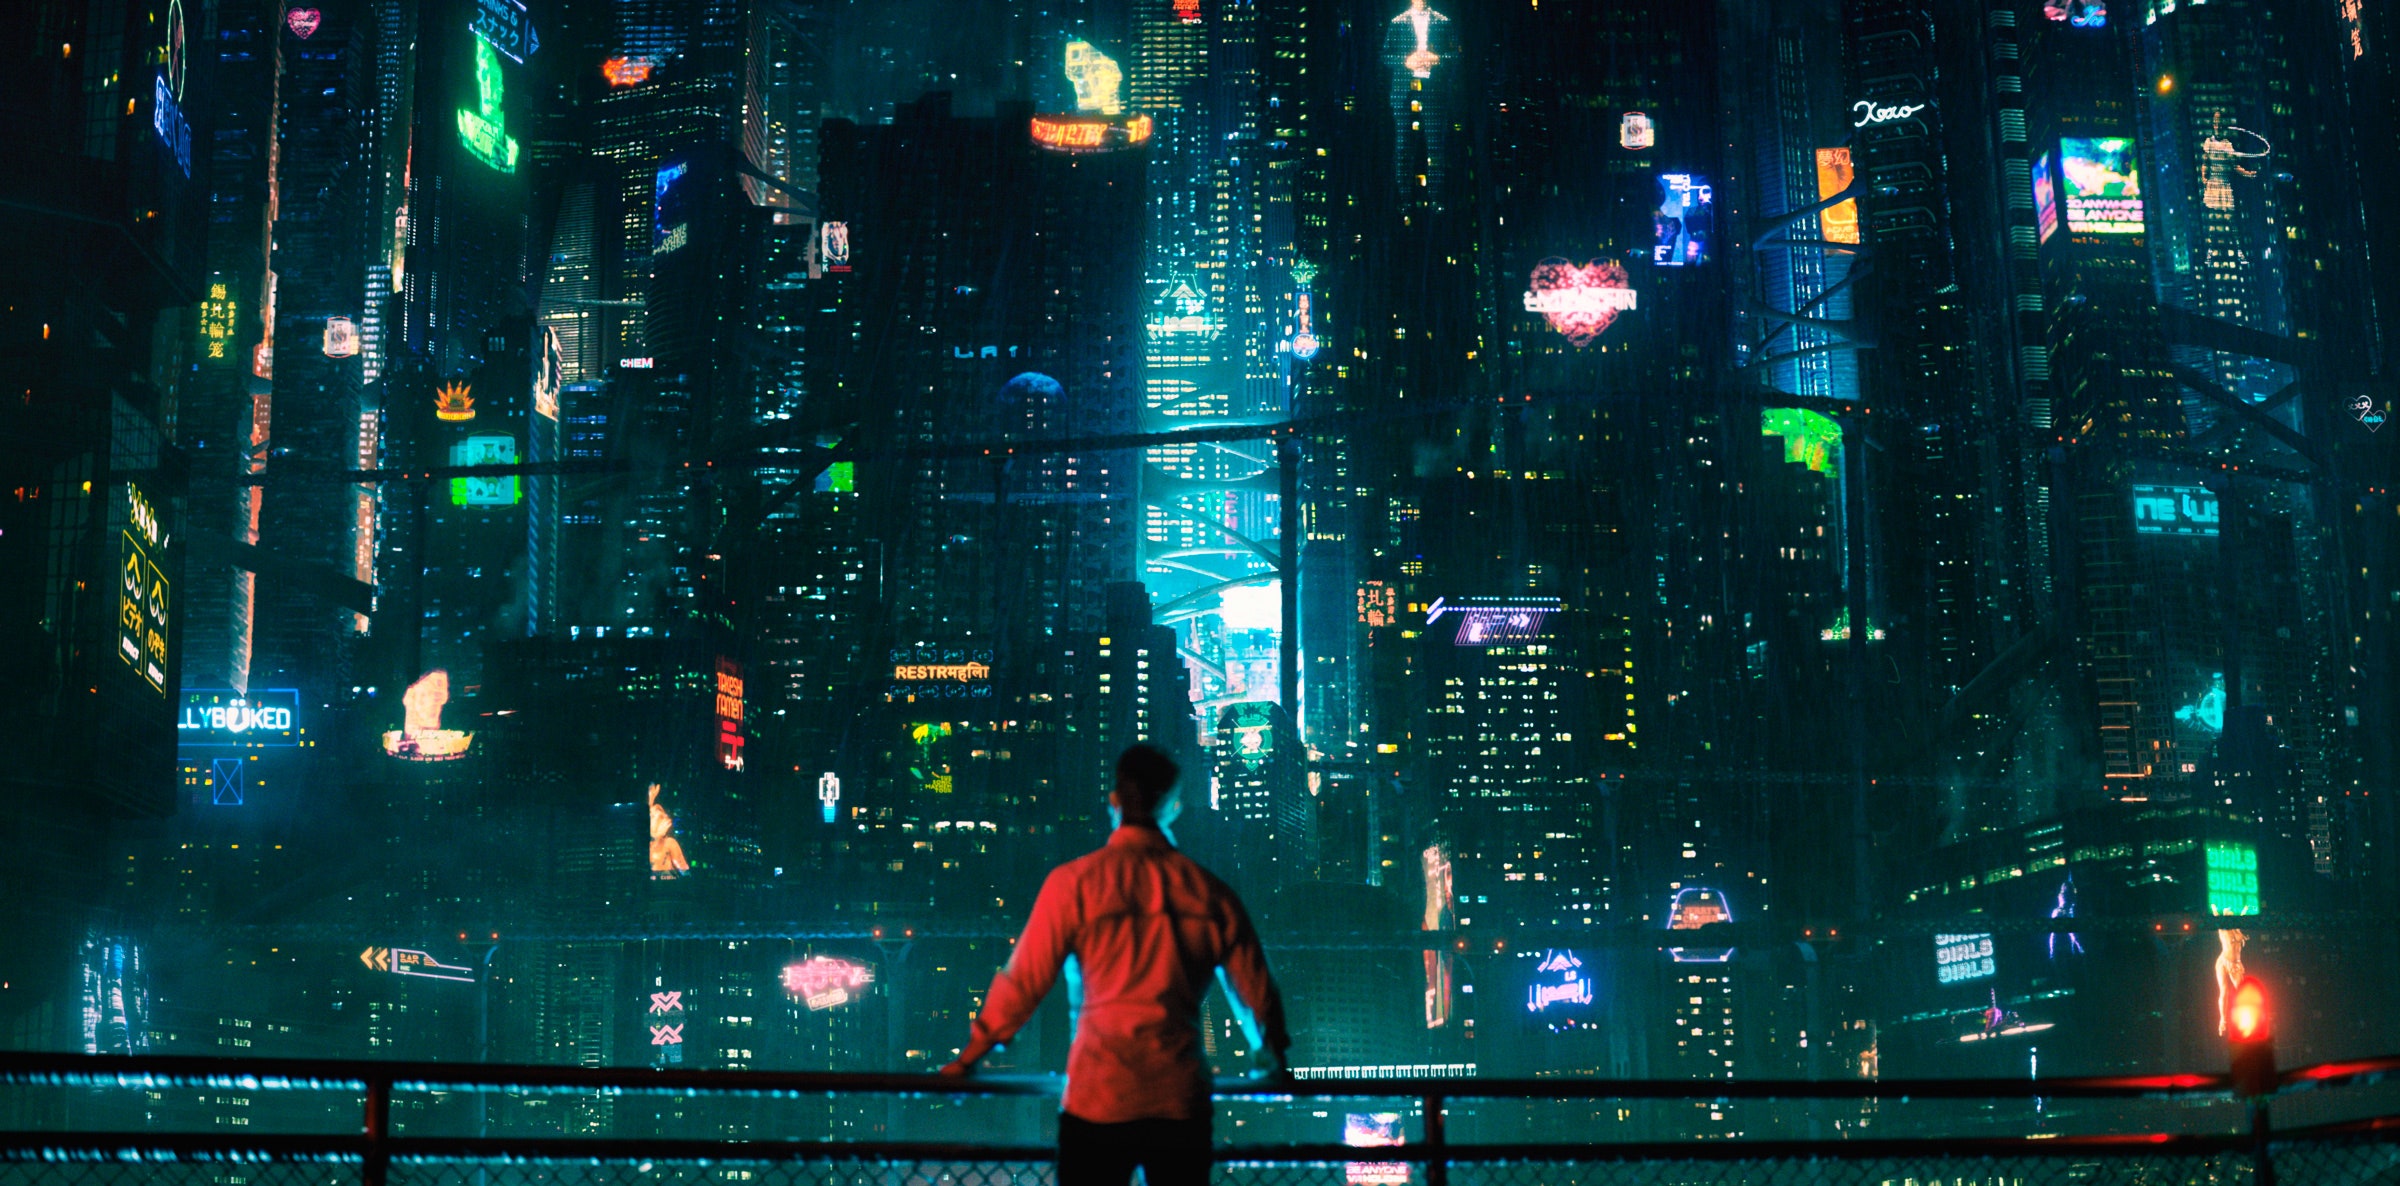 Cyberpunk Netflix 2022 Wallpapers